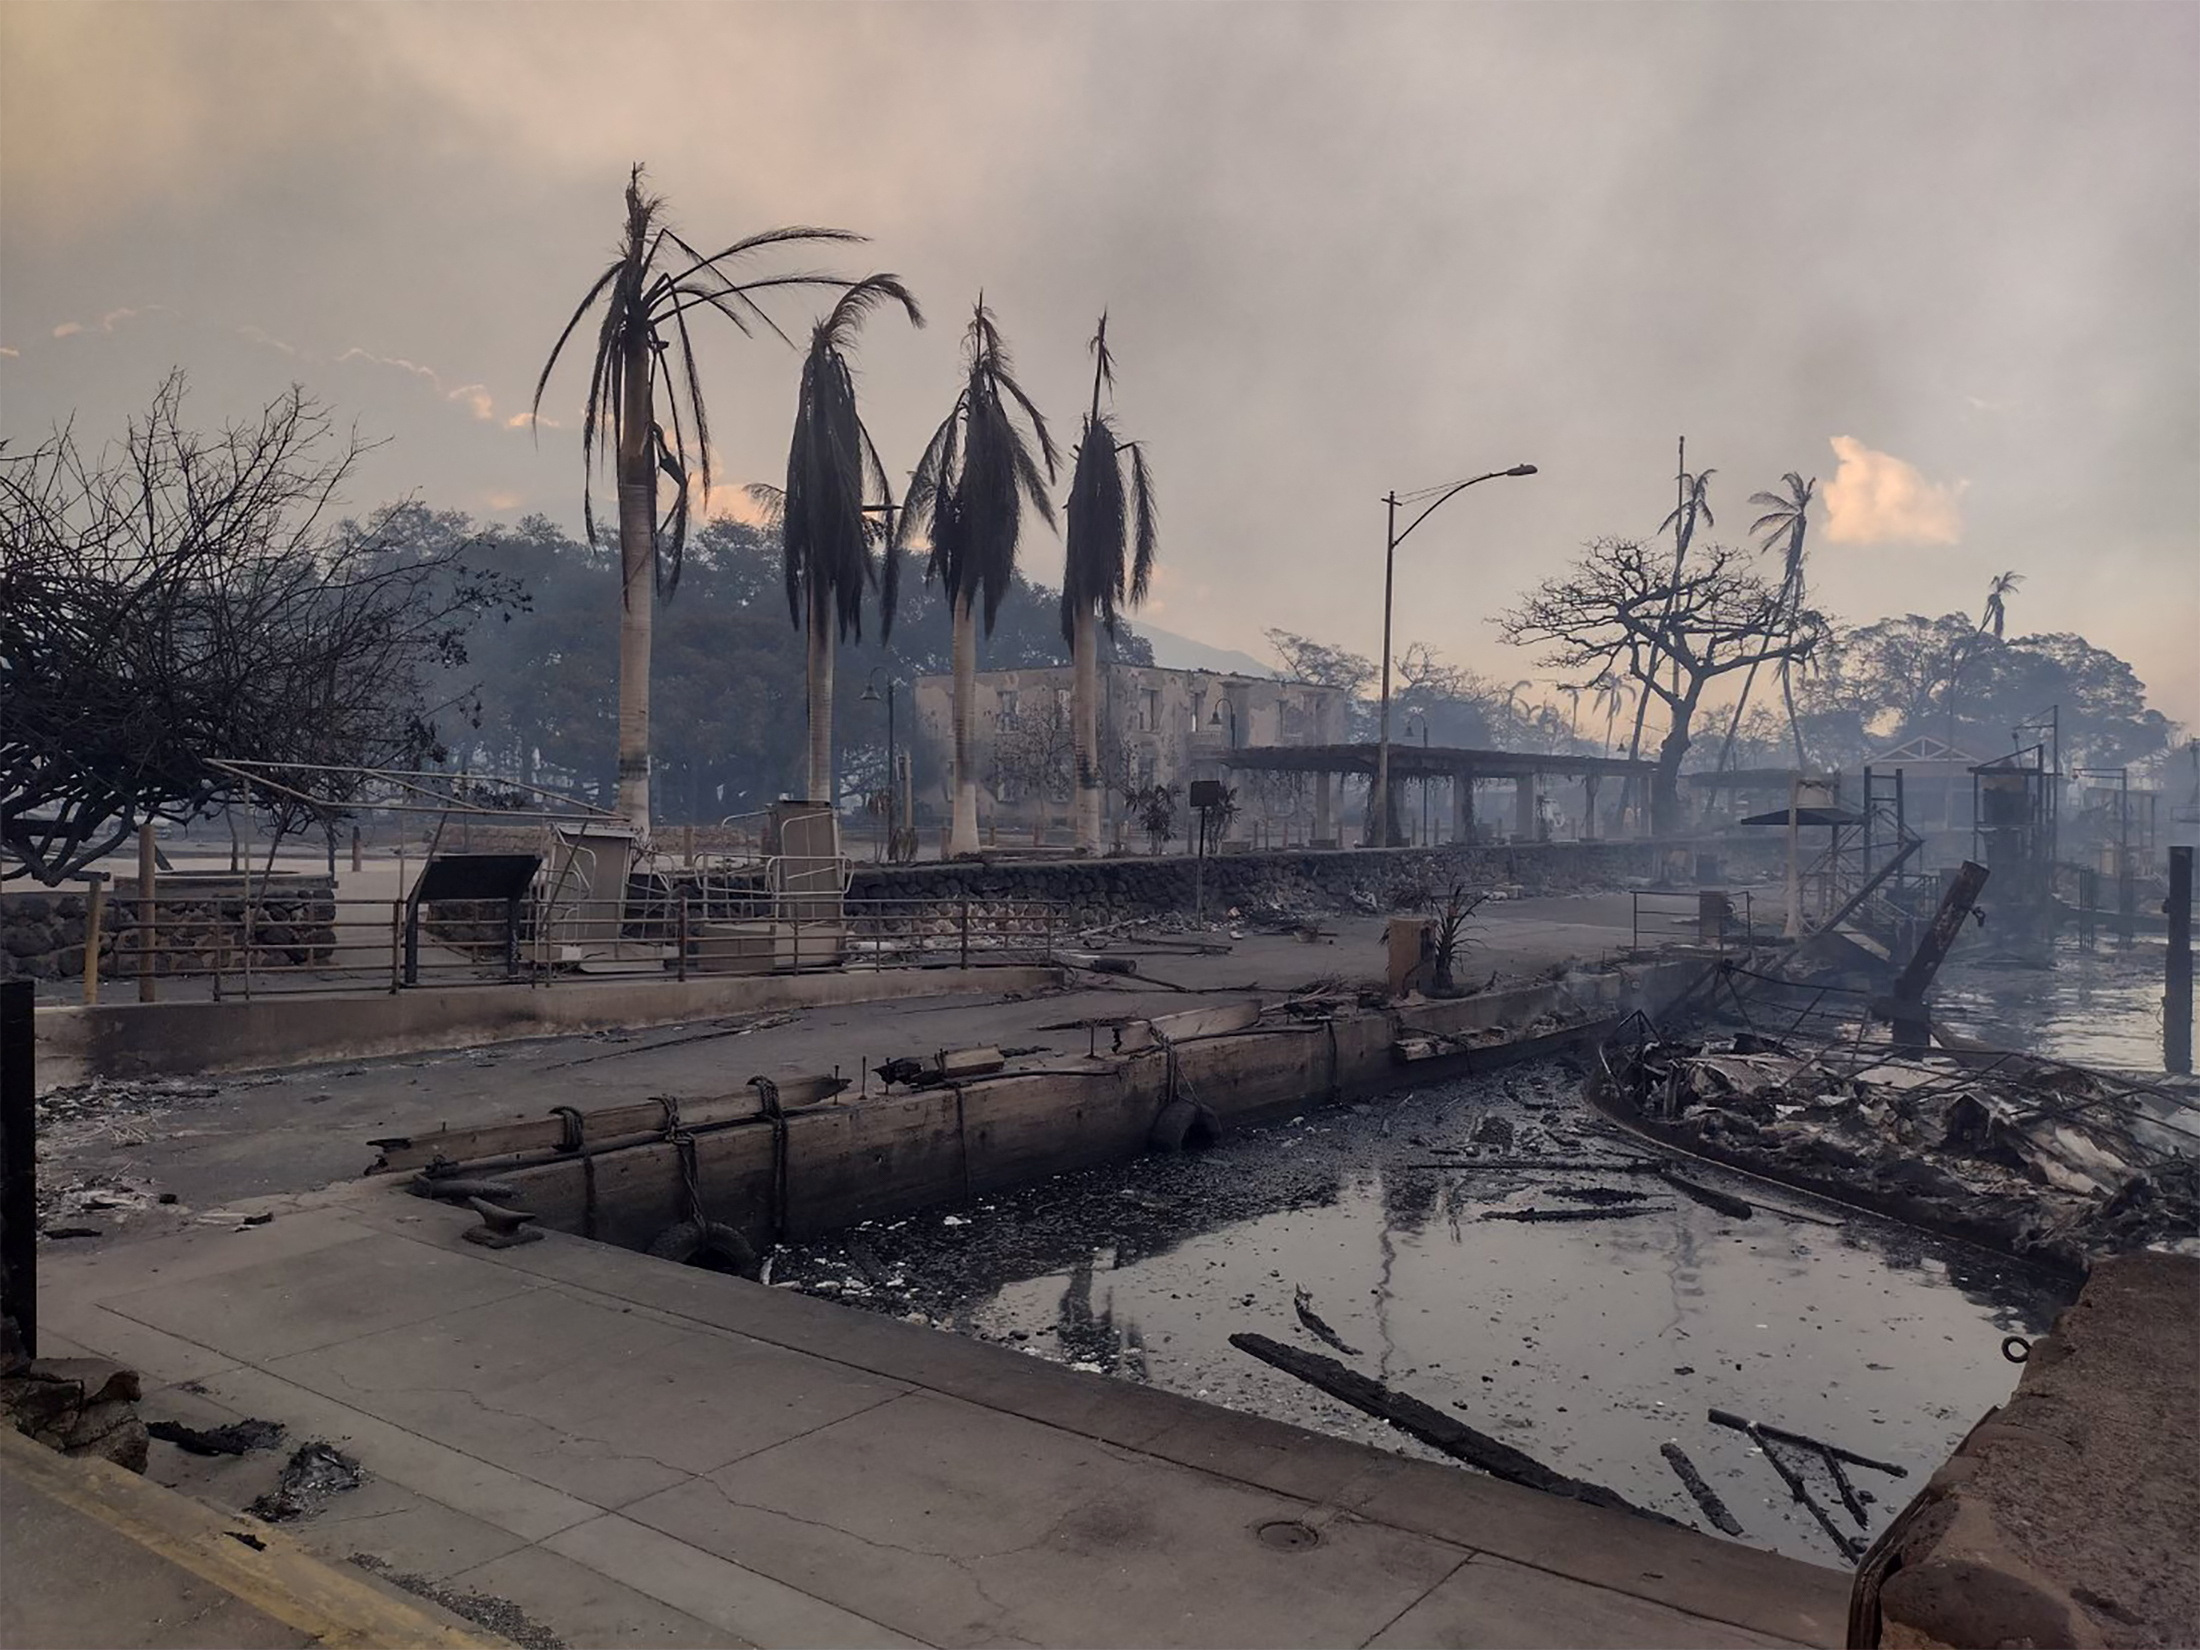 Χαβάη: Μεταξύ 8 με 10 δισ. δολάρια το κόστος από τις καταστροφικές πυρκαγιές